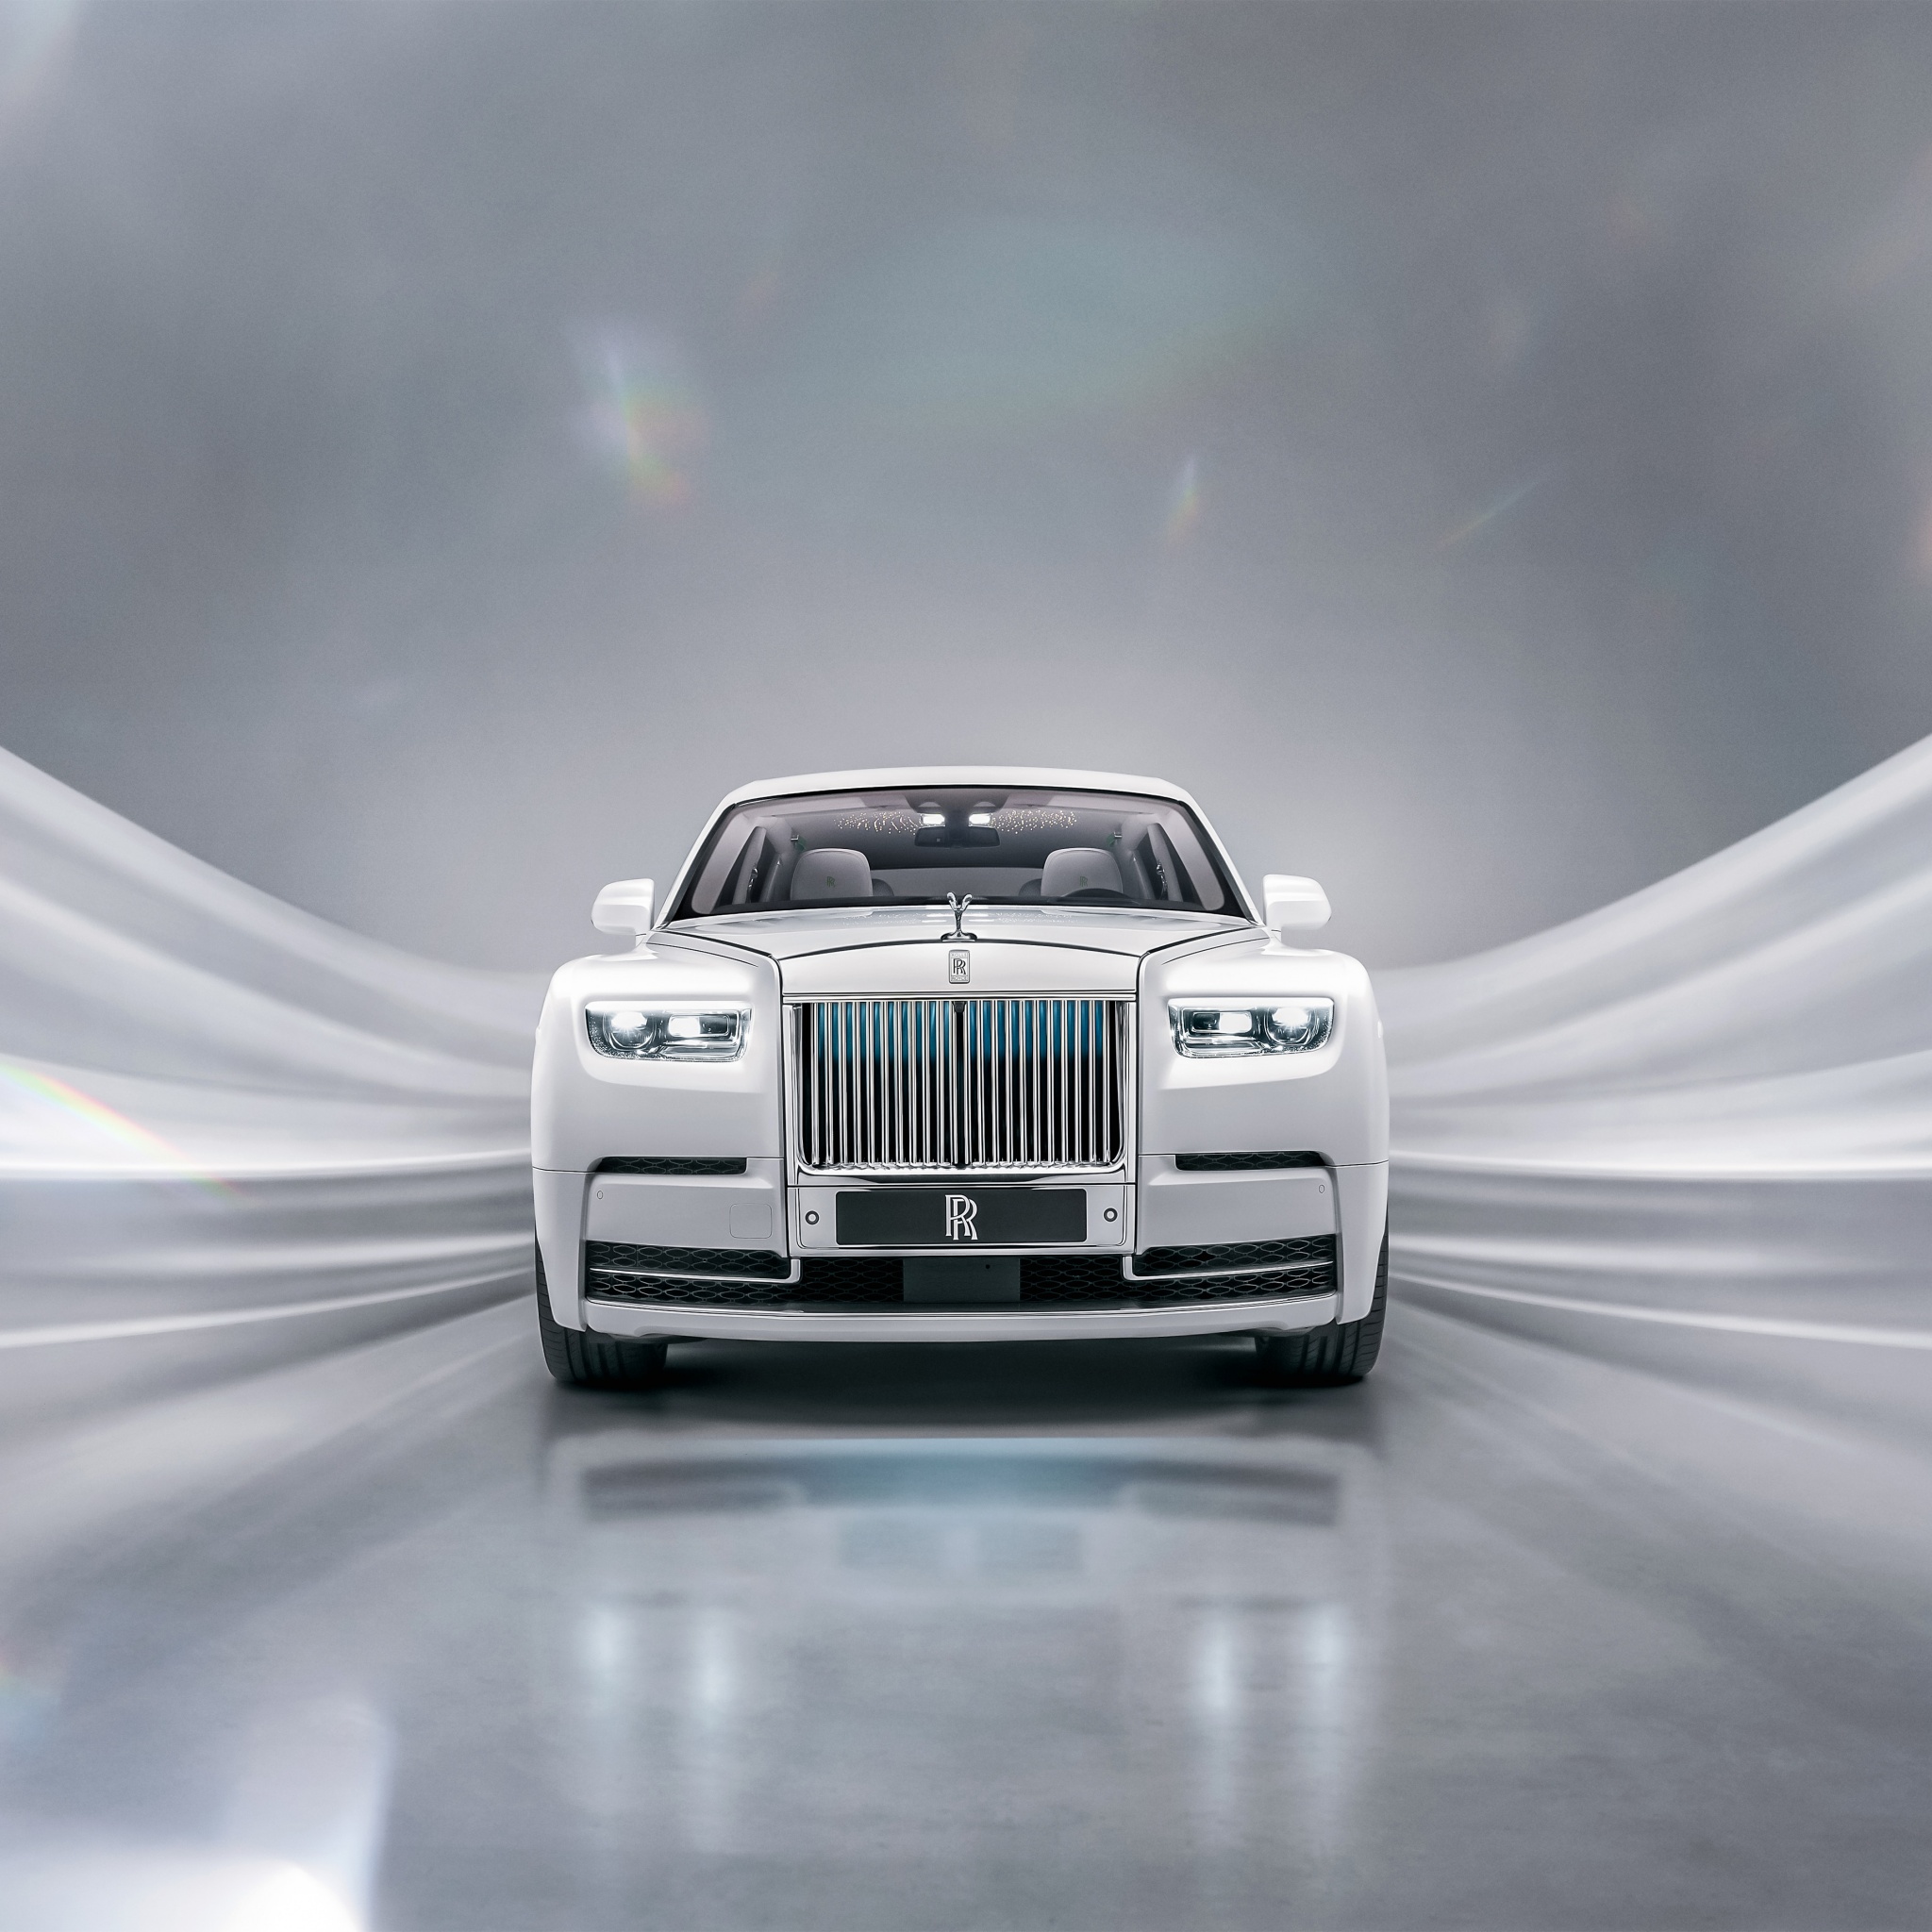 Rolls-Royce Phantom là biểu tượng của sự xa hoa và đẳng cấp. Hãy xem hình ảnh chiếc xe này để cảm nhận vẻ đẹp hoàn hảo và công nghệ tiên tiến trong thiết kế của nó. 